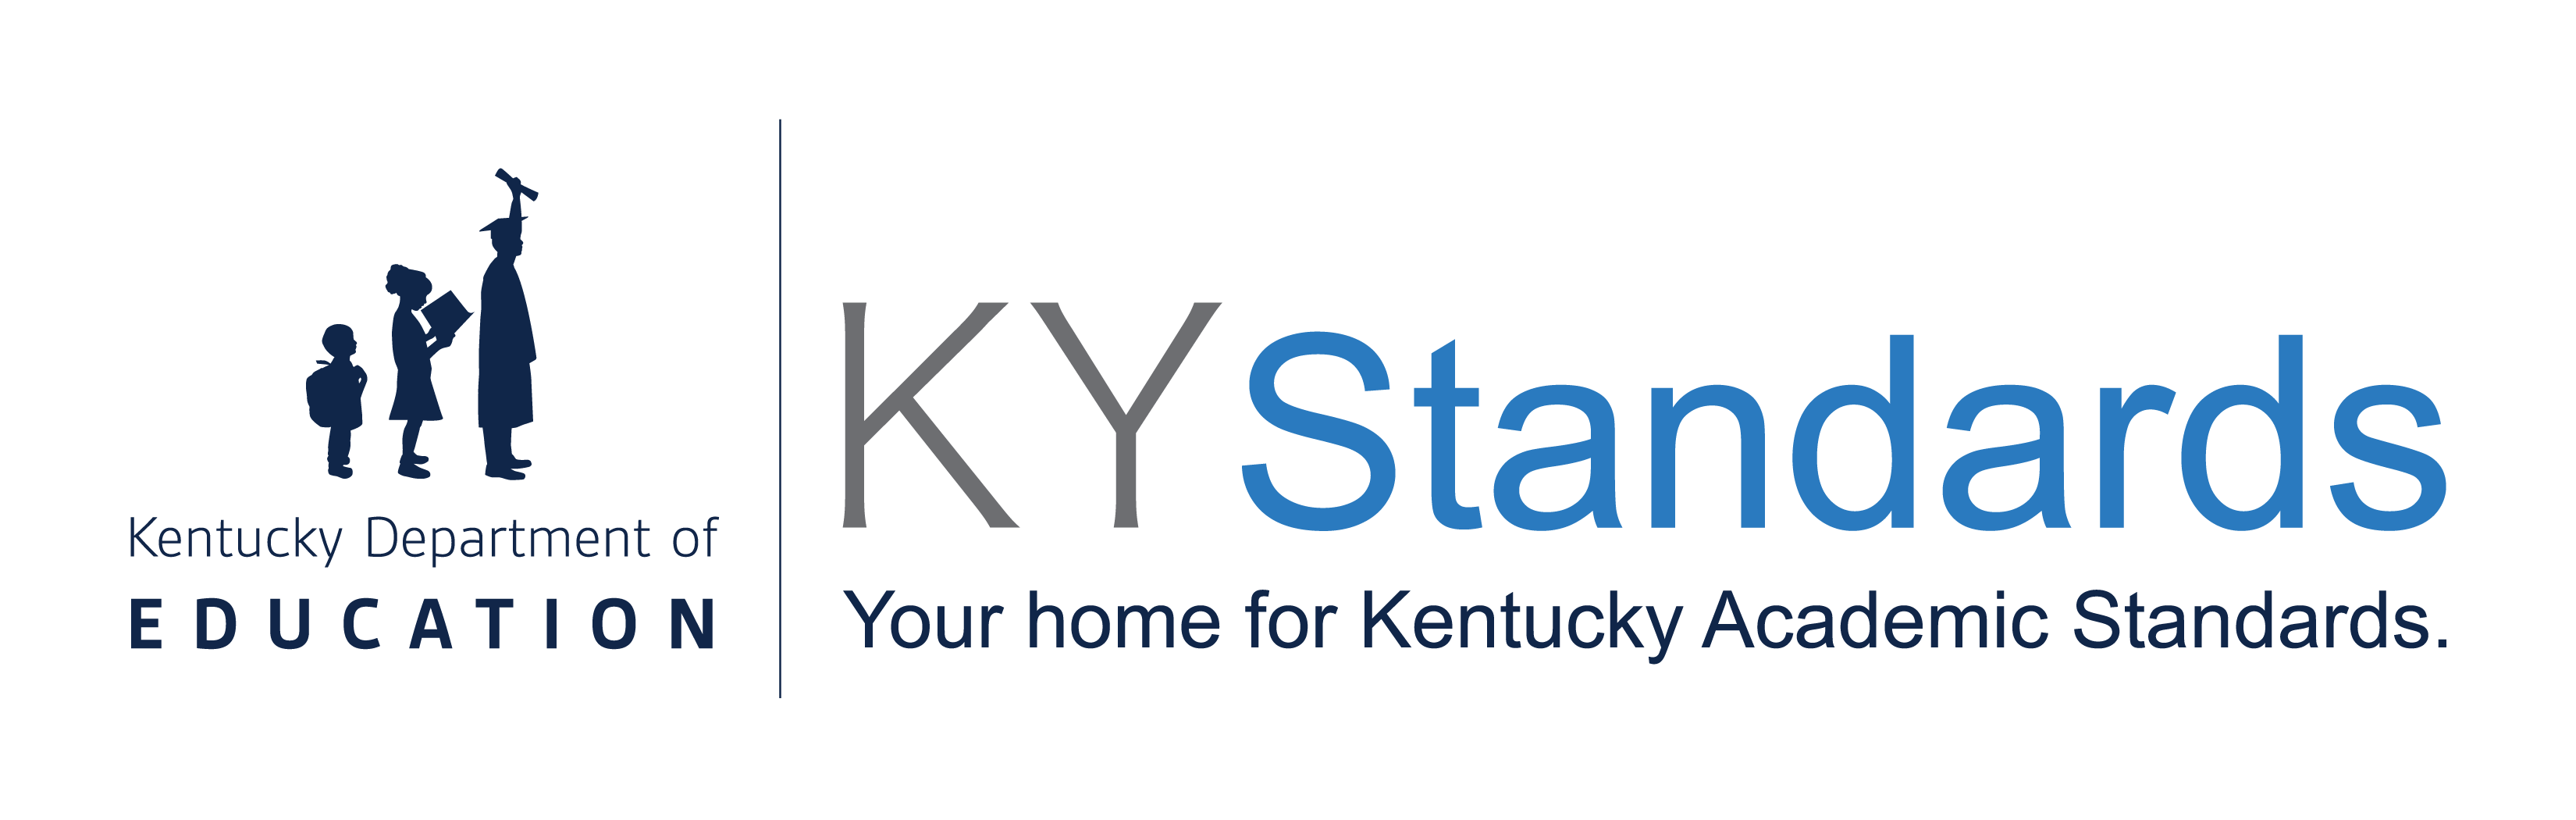 KY standards logo